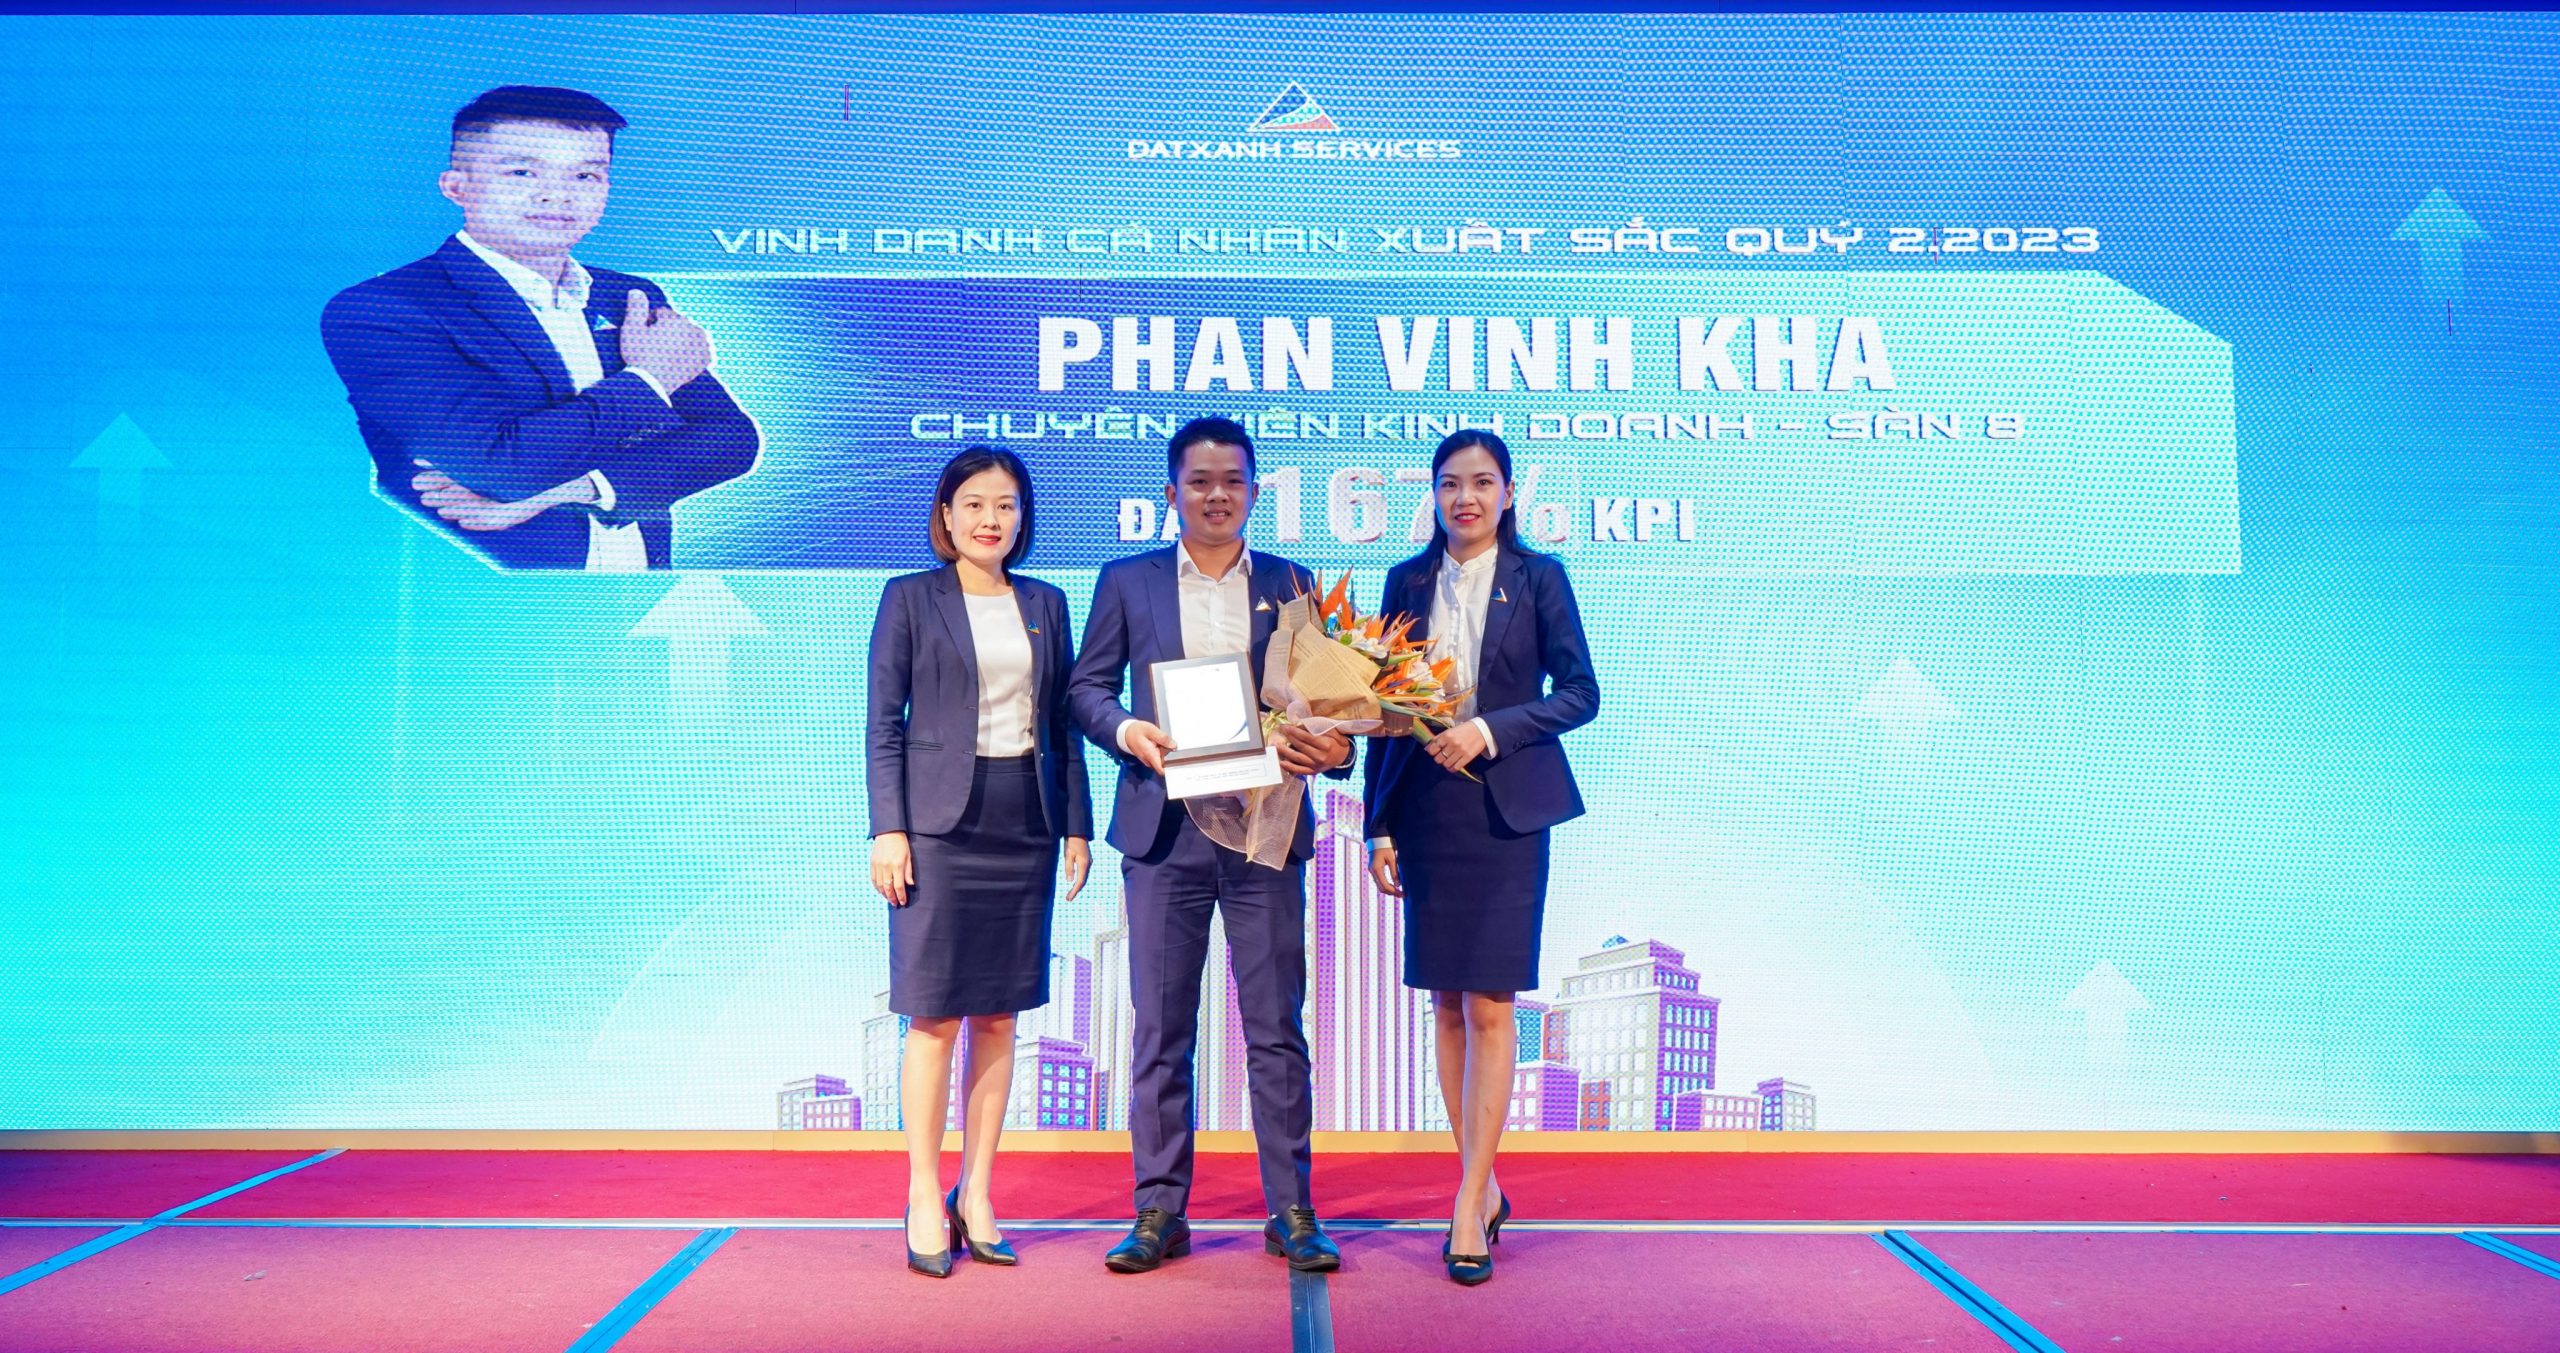 Anh Phan Vinh Kha - Chuyên viên Kinh doanh Sàn 8 đã đạt danh hiệu Cá nhân xuất sắc Quý II năm 2023 với 167% KPI.